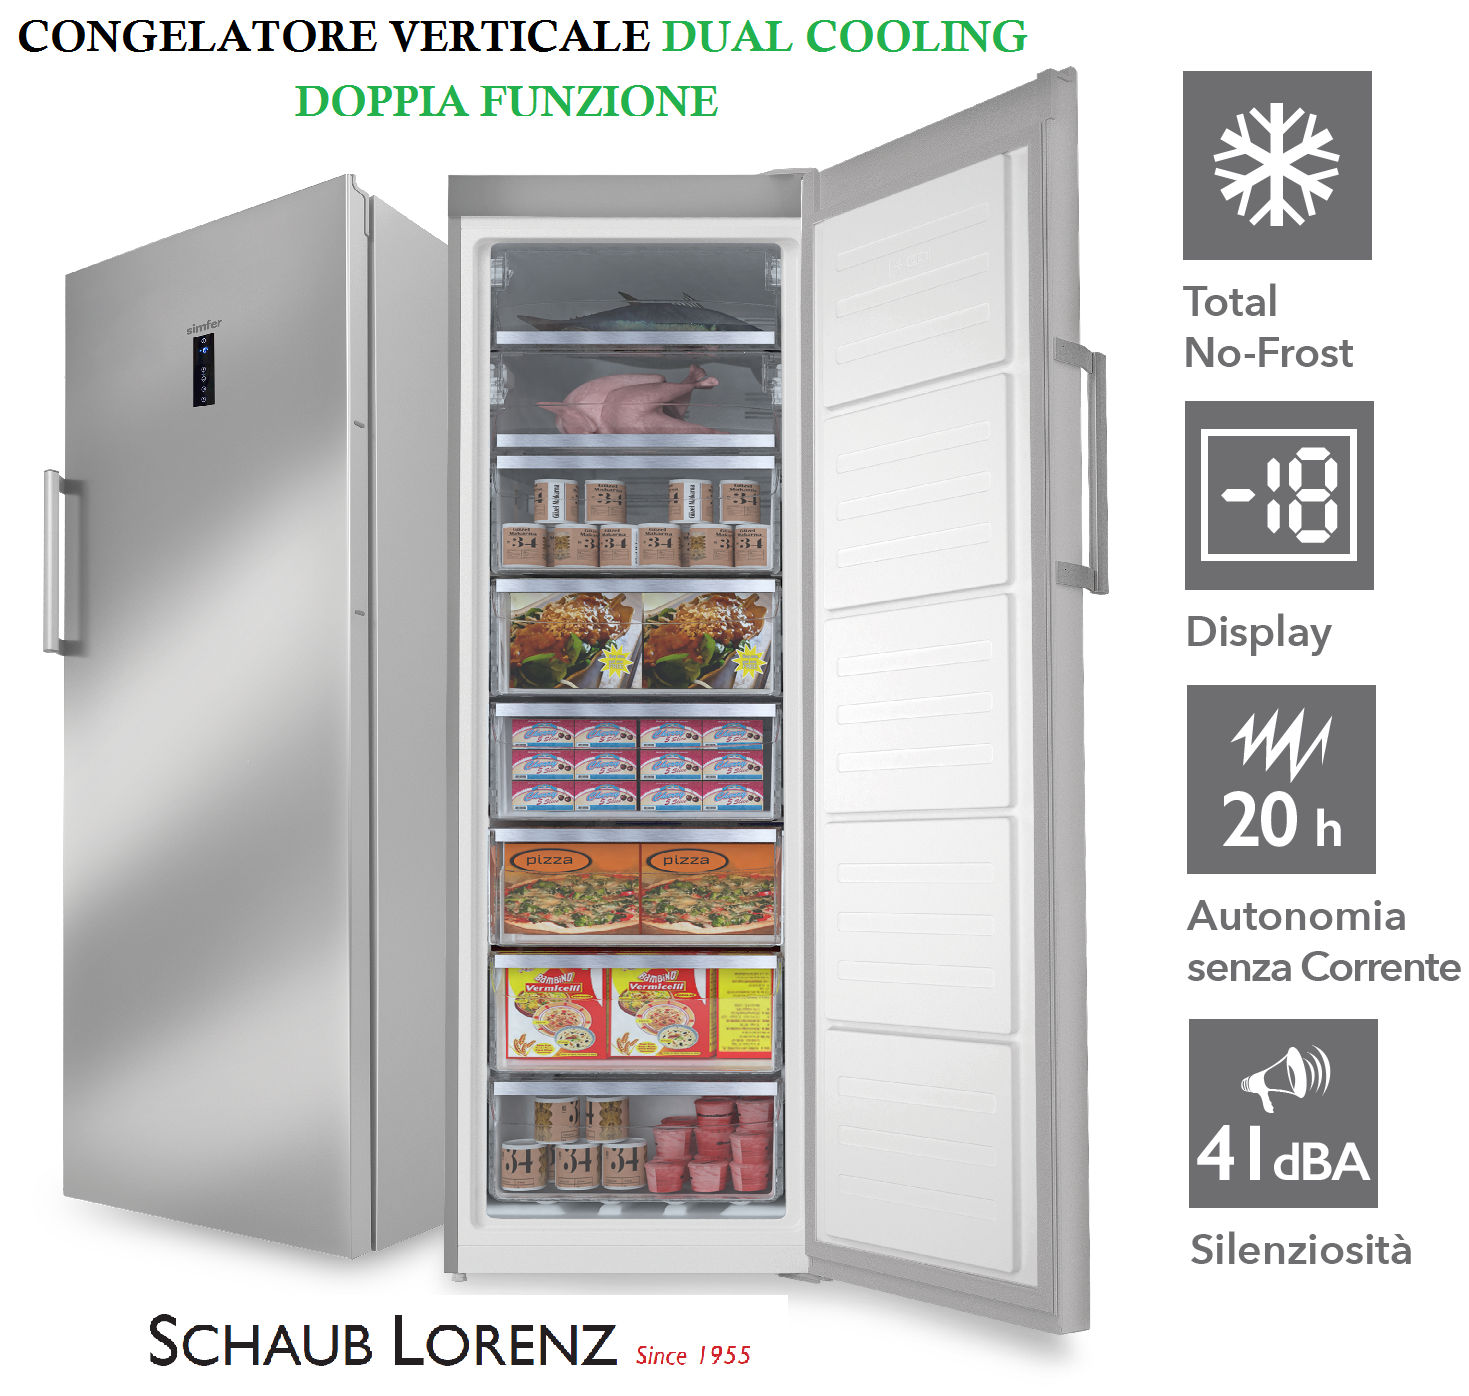 Congelatore verticale con funzioni di diagnosi automatica